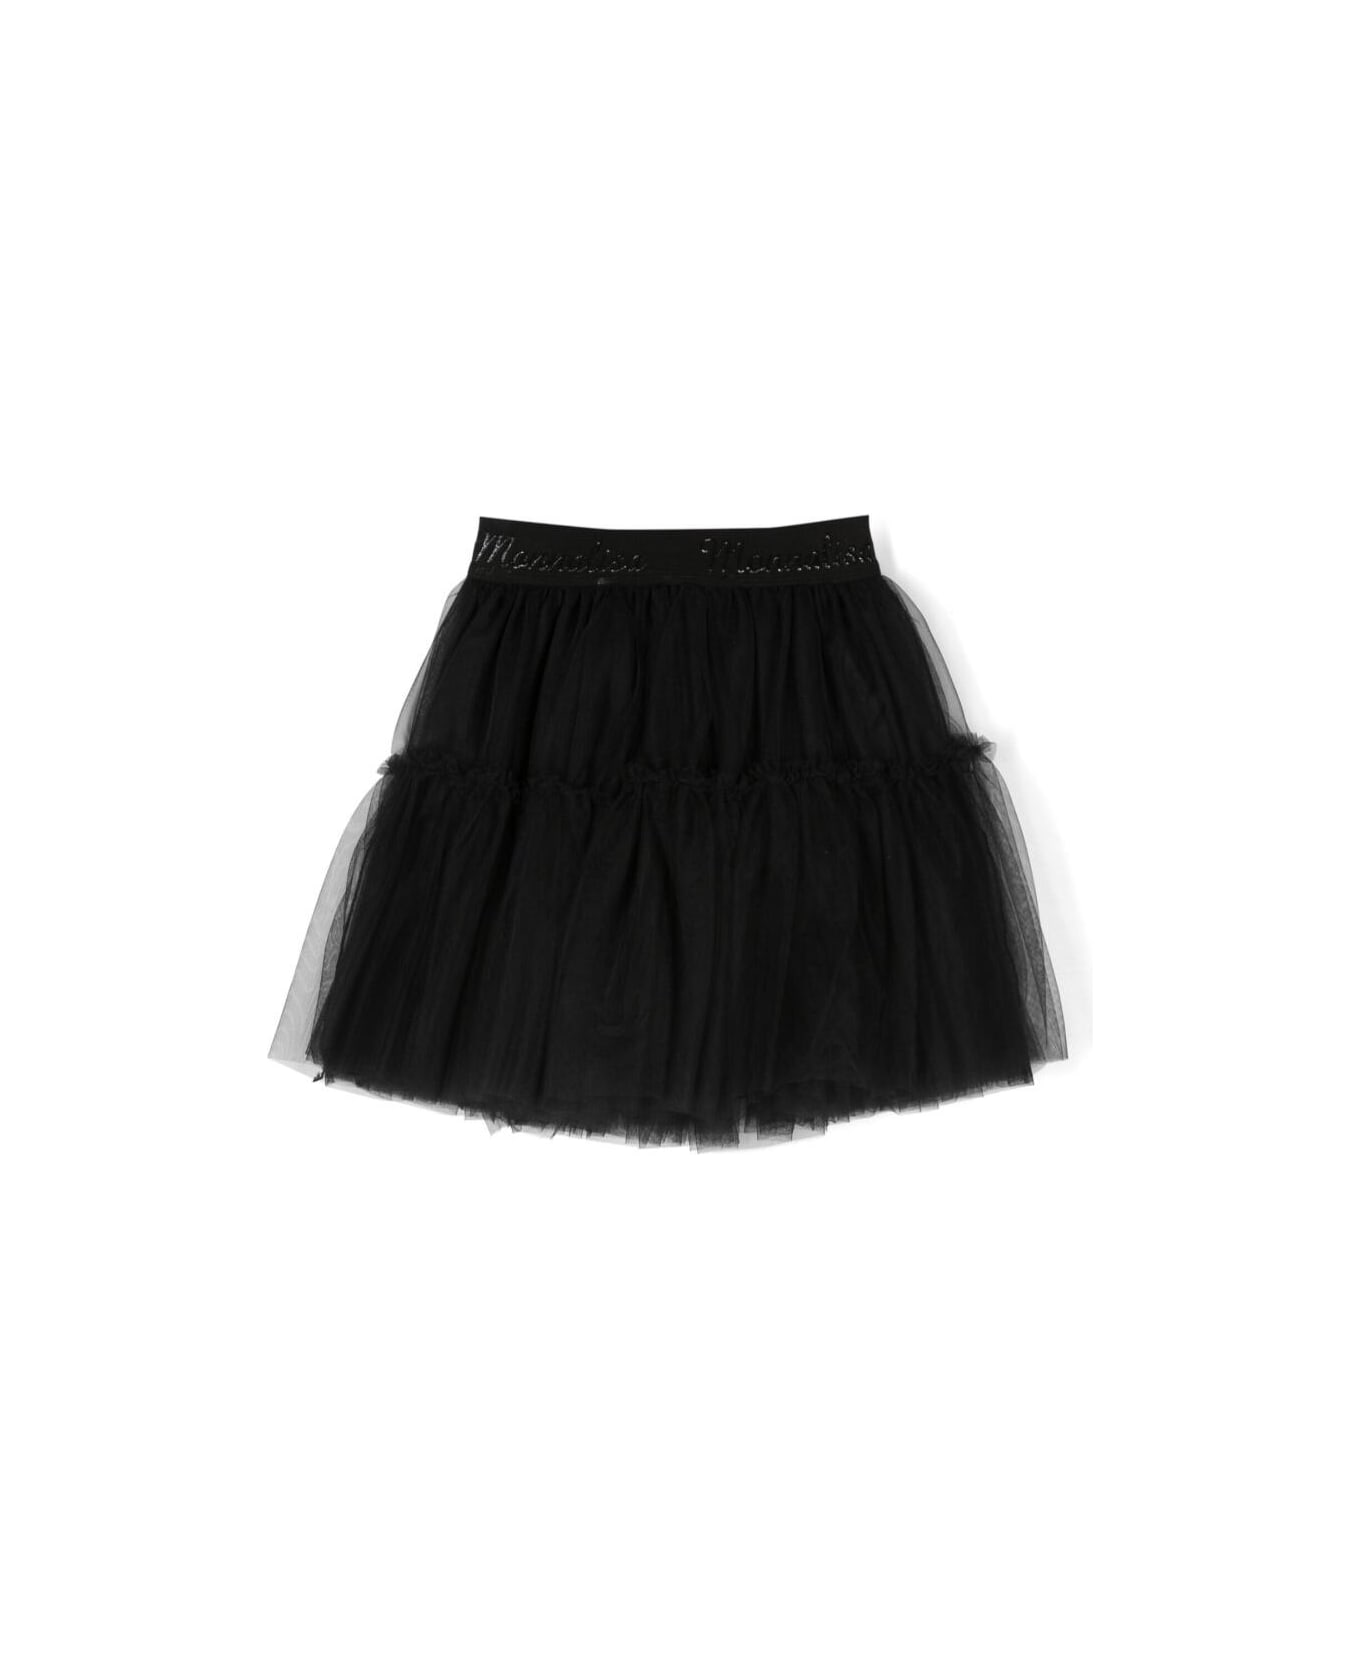 Monnalisa Black Mini-skirt With Branded Elastic Waistband In Tulle Girl - Black